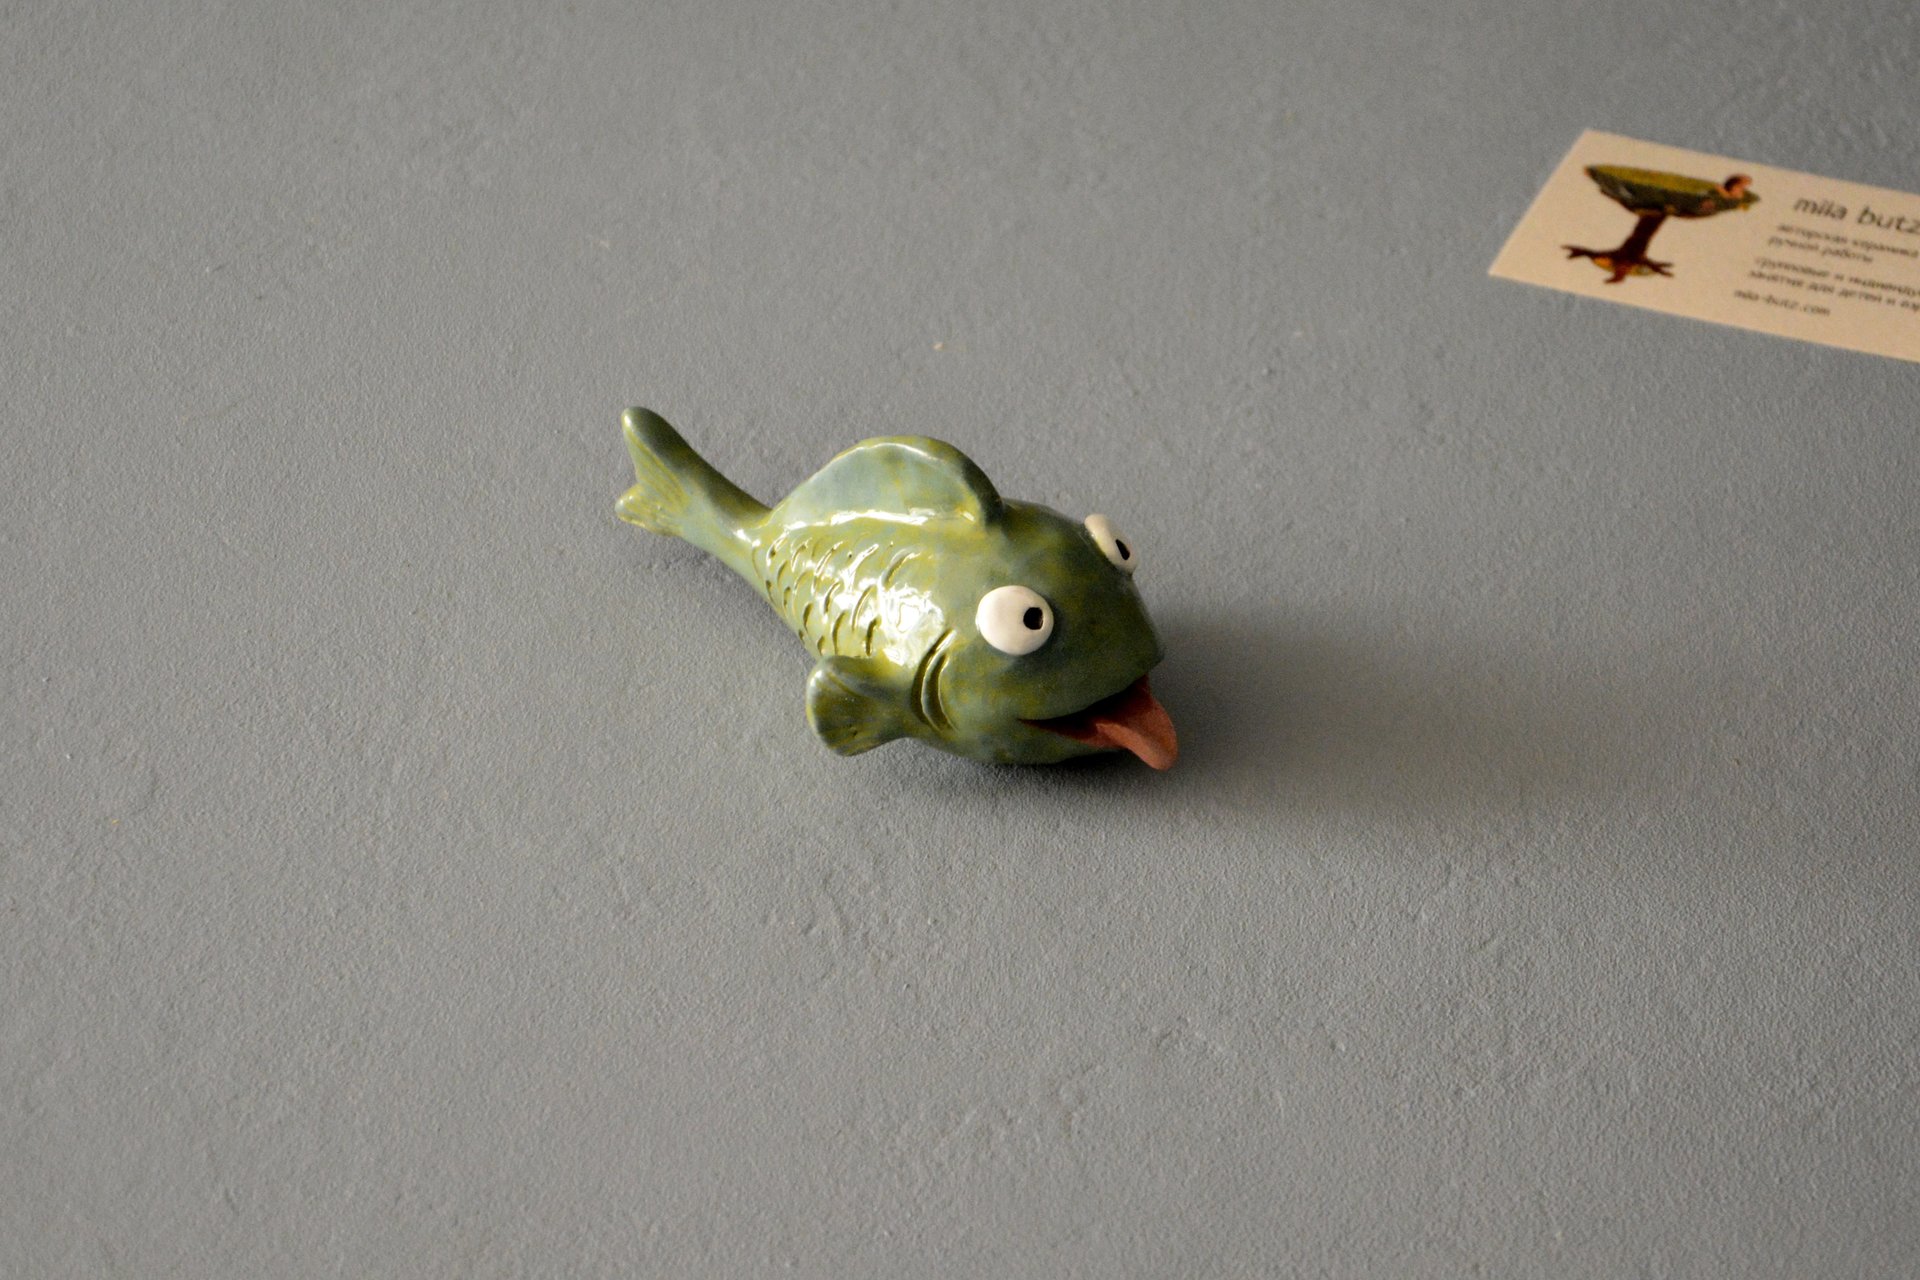 Керамическая фигурка рыбки улыбаки, длина - 12.5 см, высота - 6 см, фото 1 из 6.